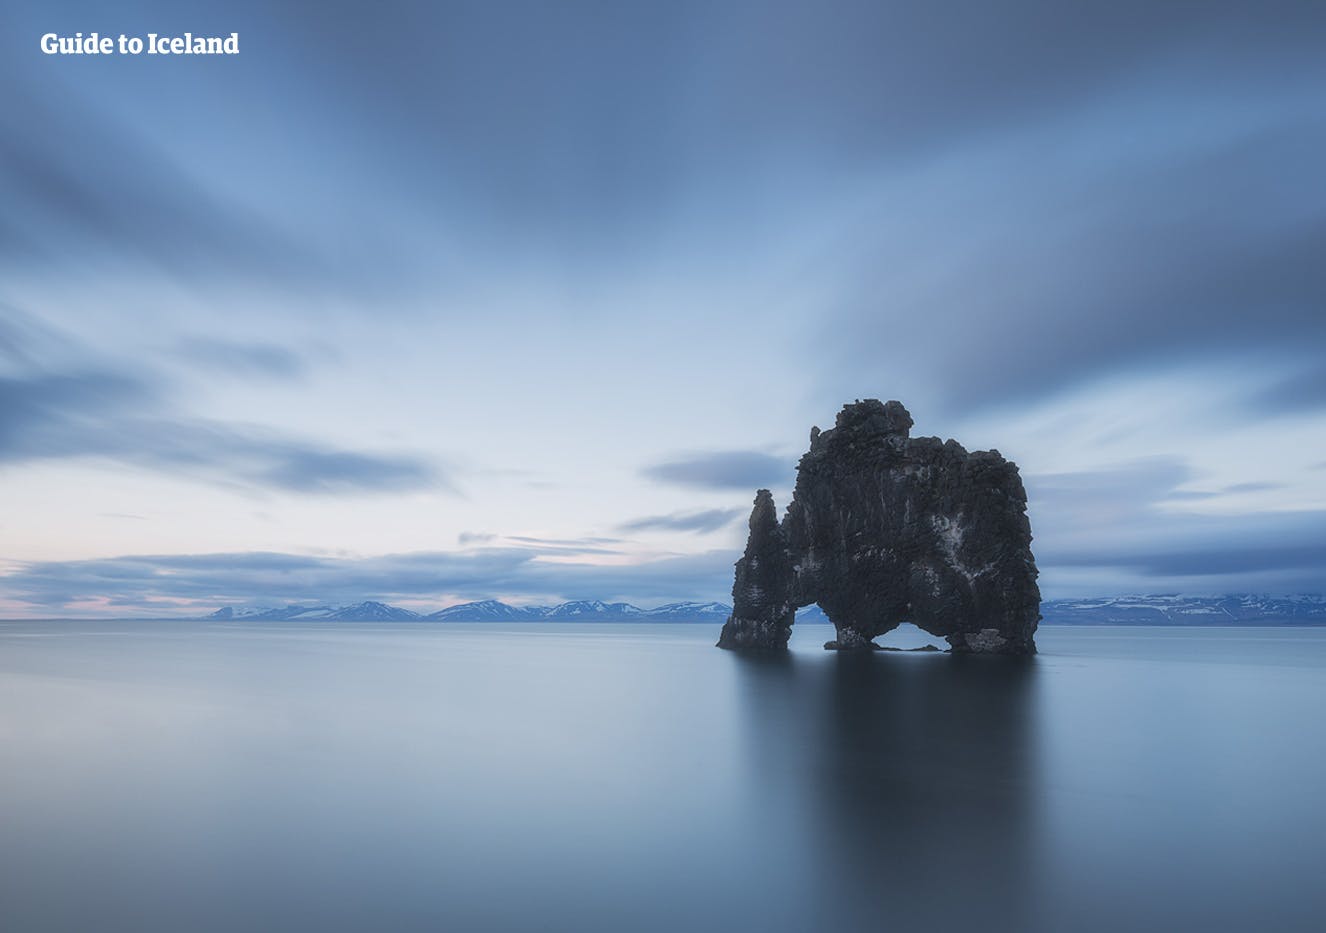 La formación rocosa de Hvitserkur que se encuentra frente a la costa de la península de Troll en el noroeste de Islandia.